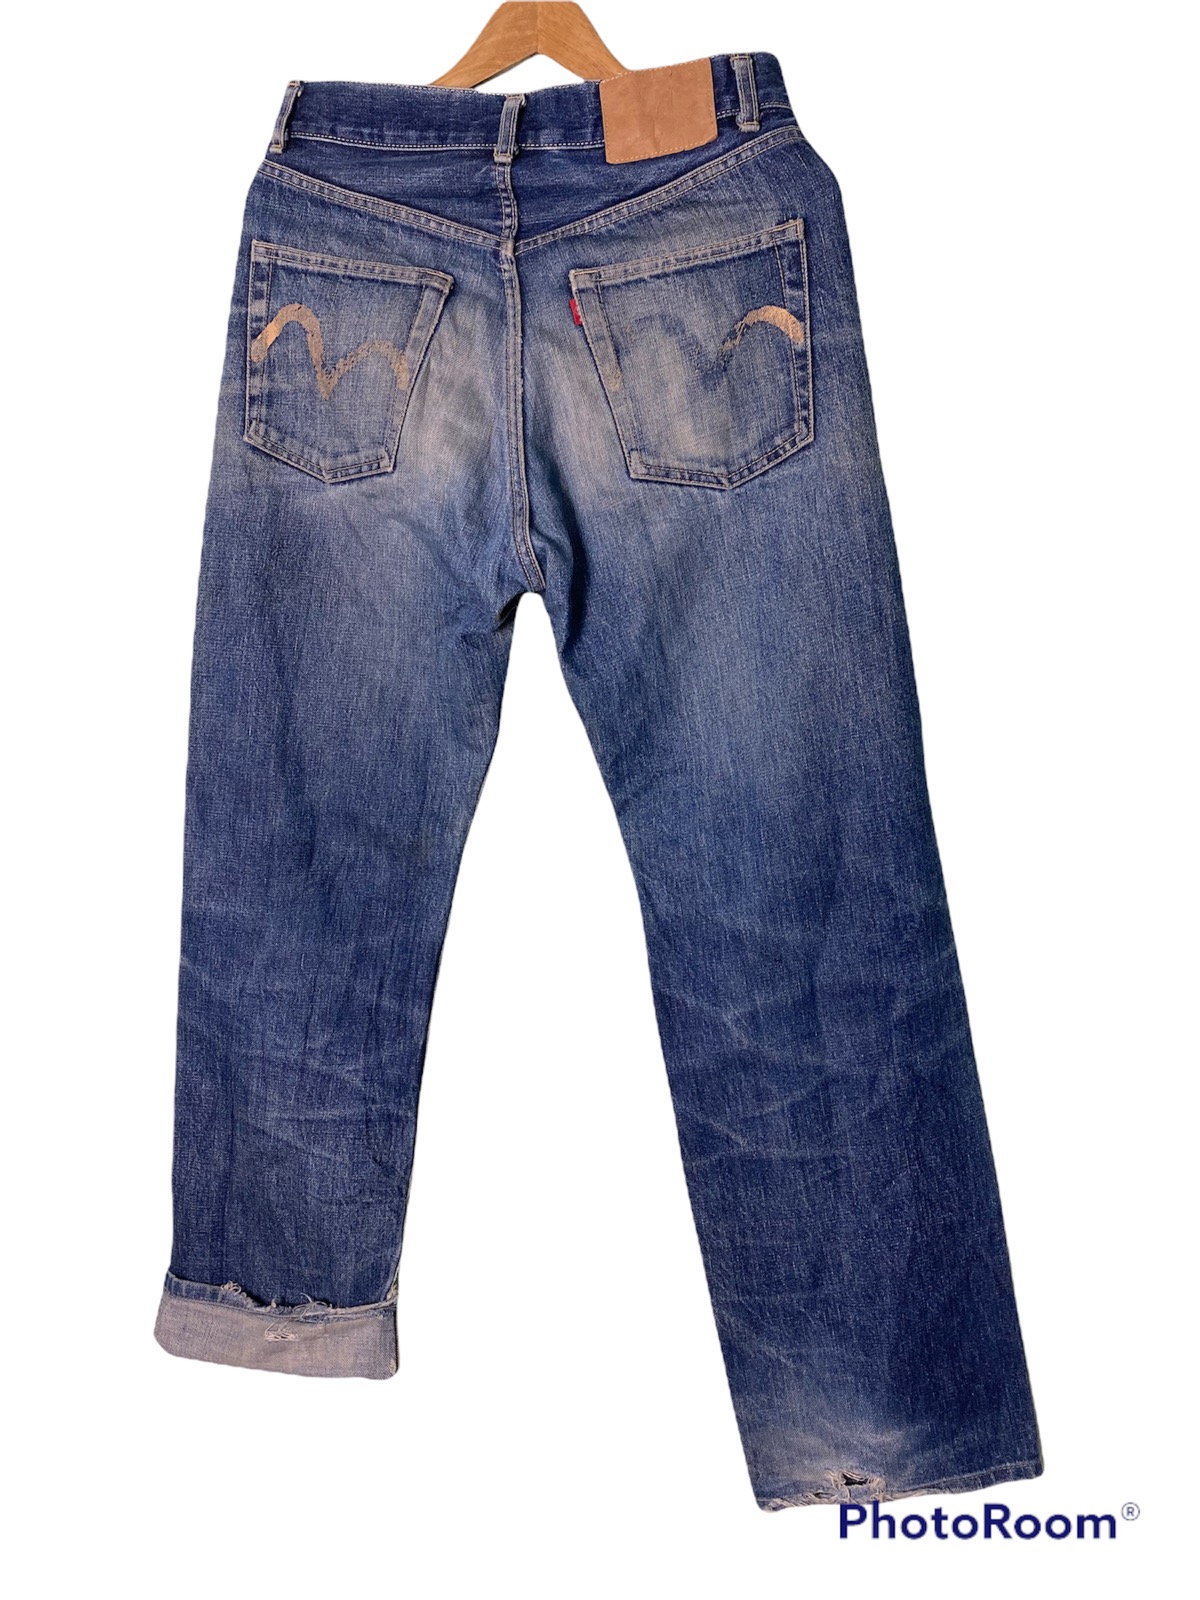 Evisu Selvedge Denim Jeans - 2